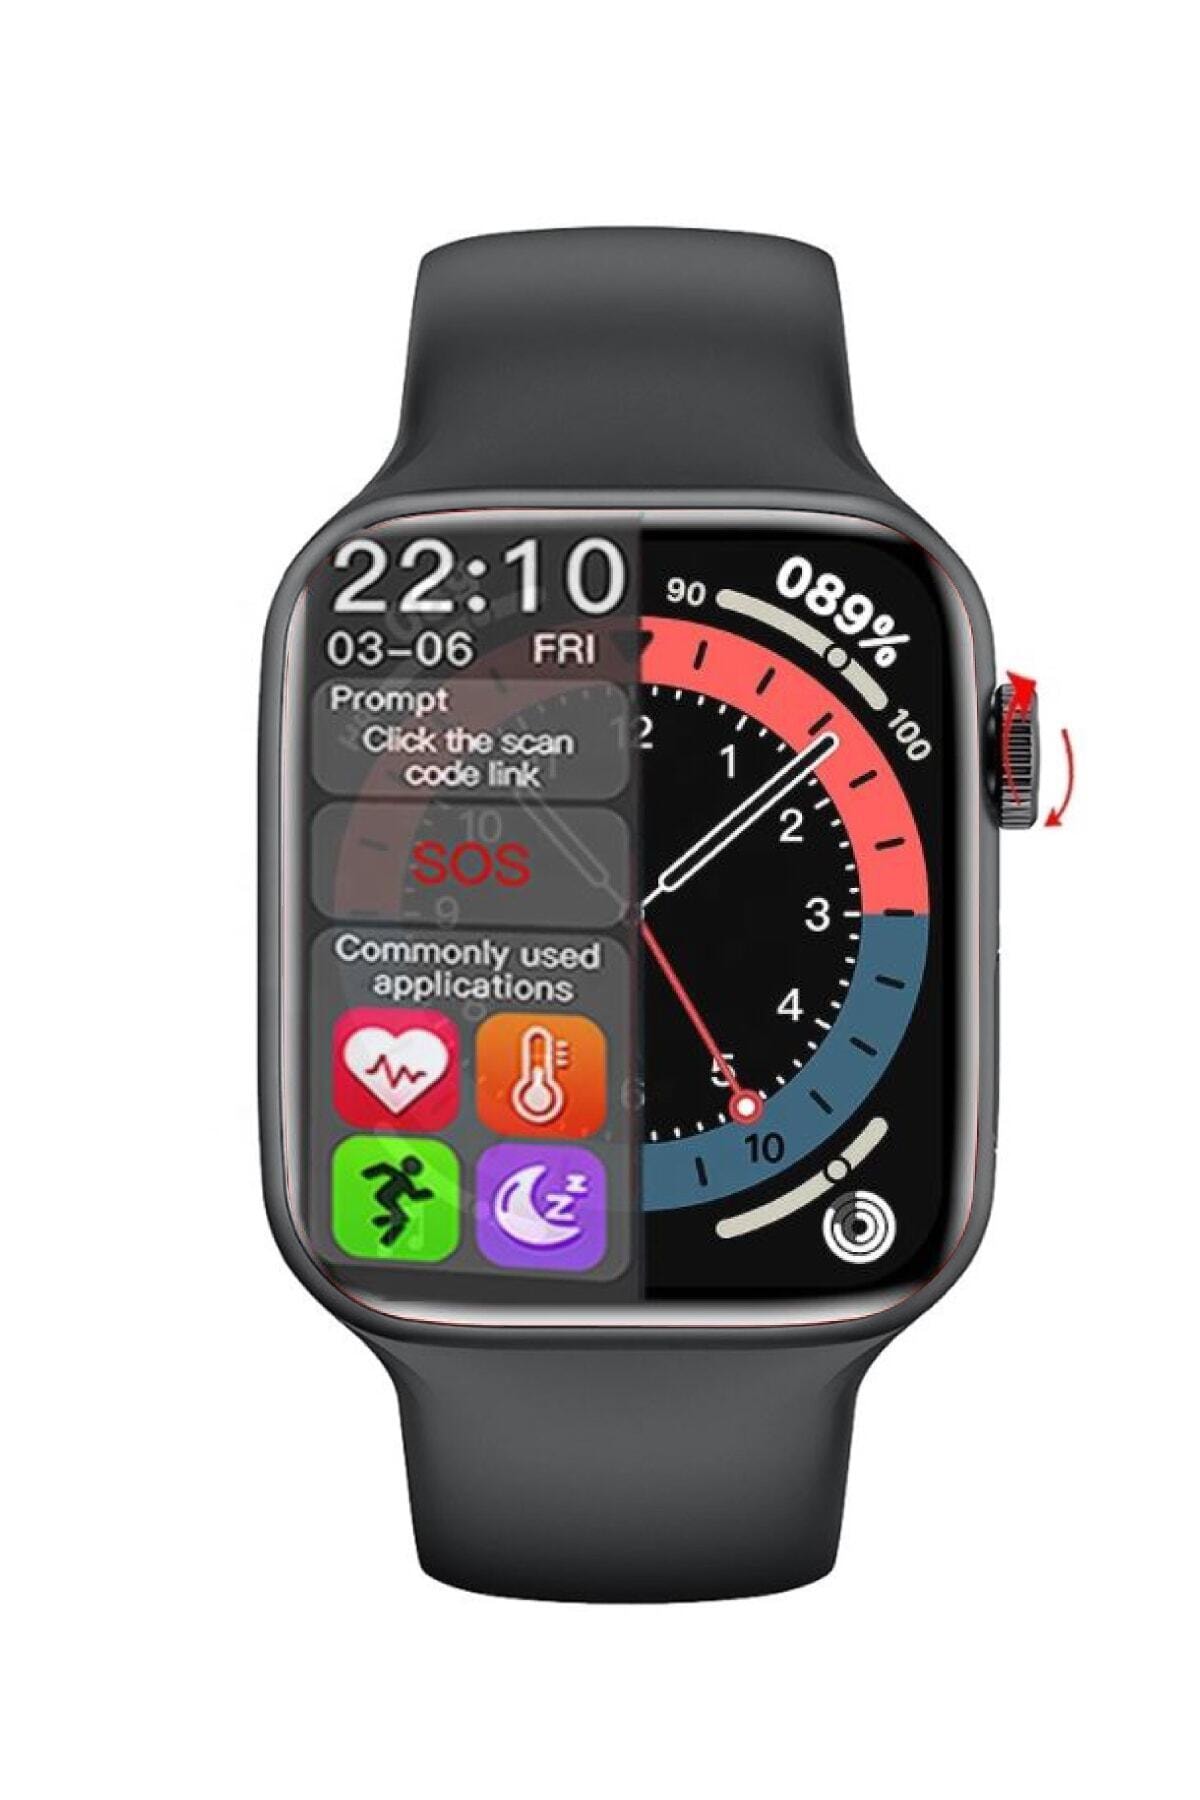 Watch X7 Multifonksiyon Akıllı Saat - Bilek Sensörlü , Ios Ve Android Uyumlu - 2021